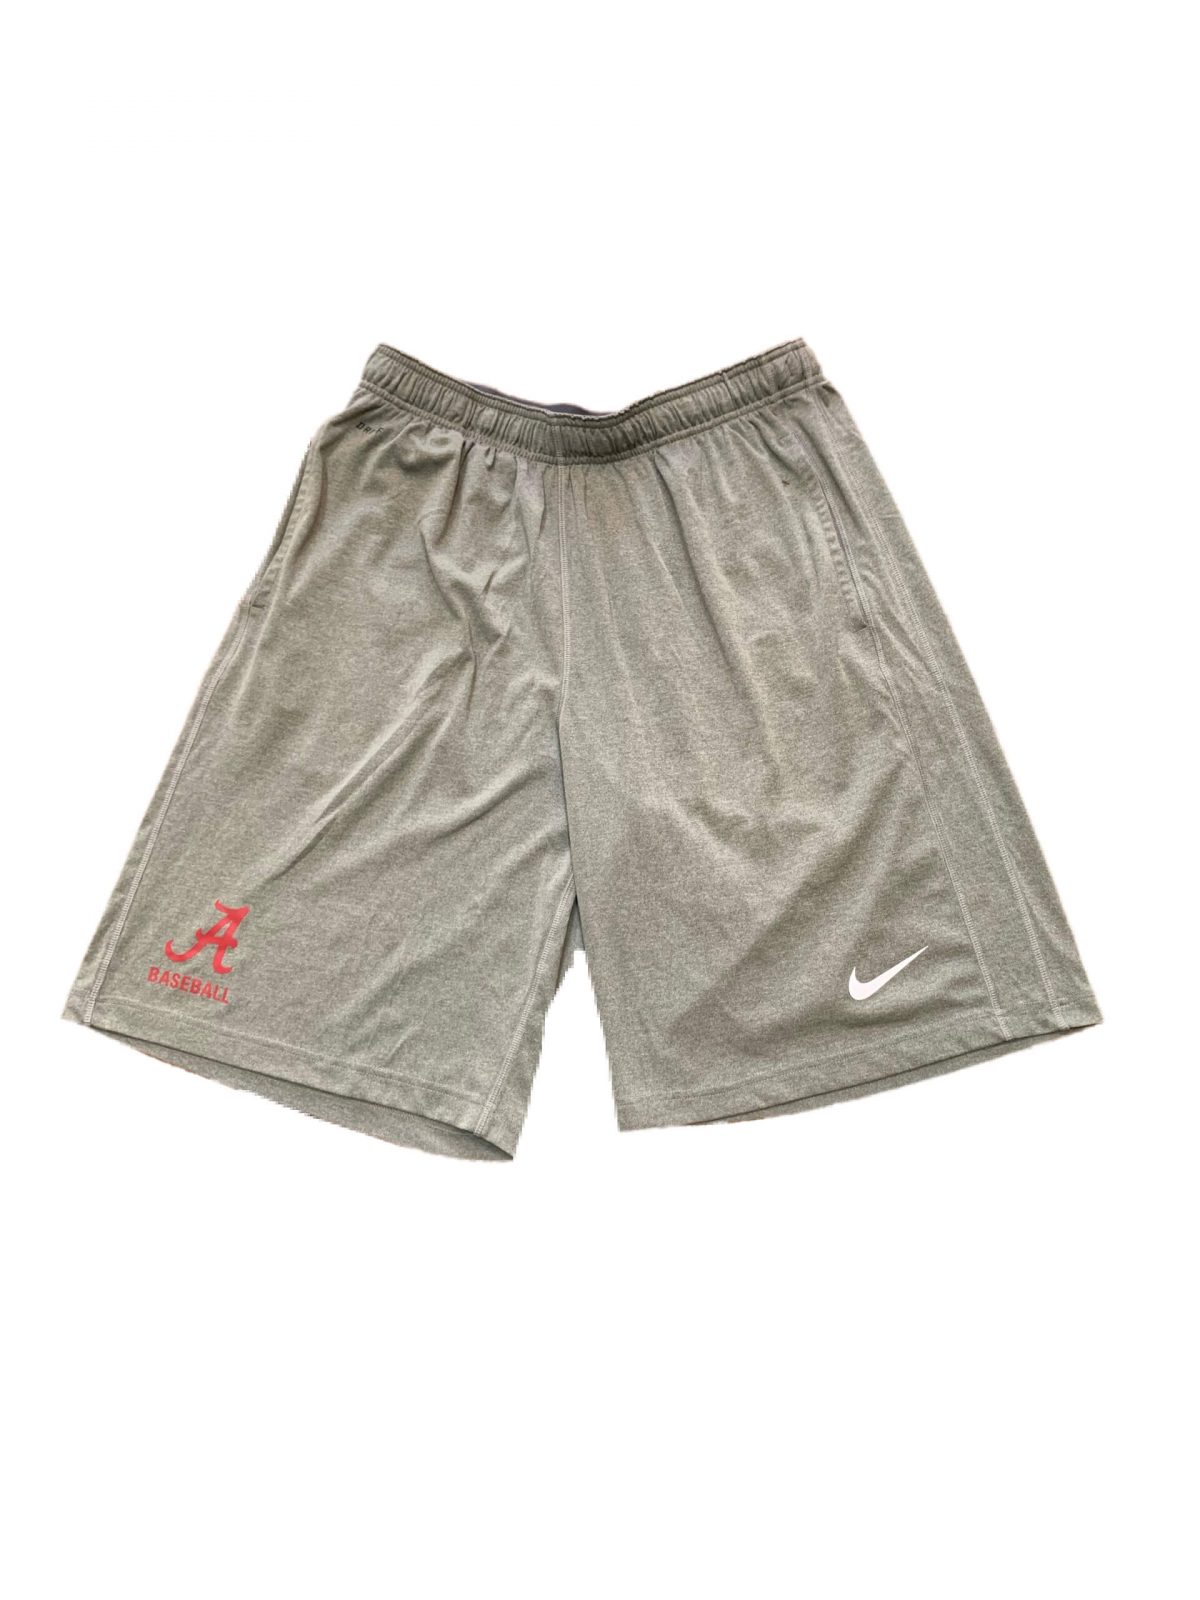 Alabama Baseball Shorts : NARP Clothing